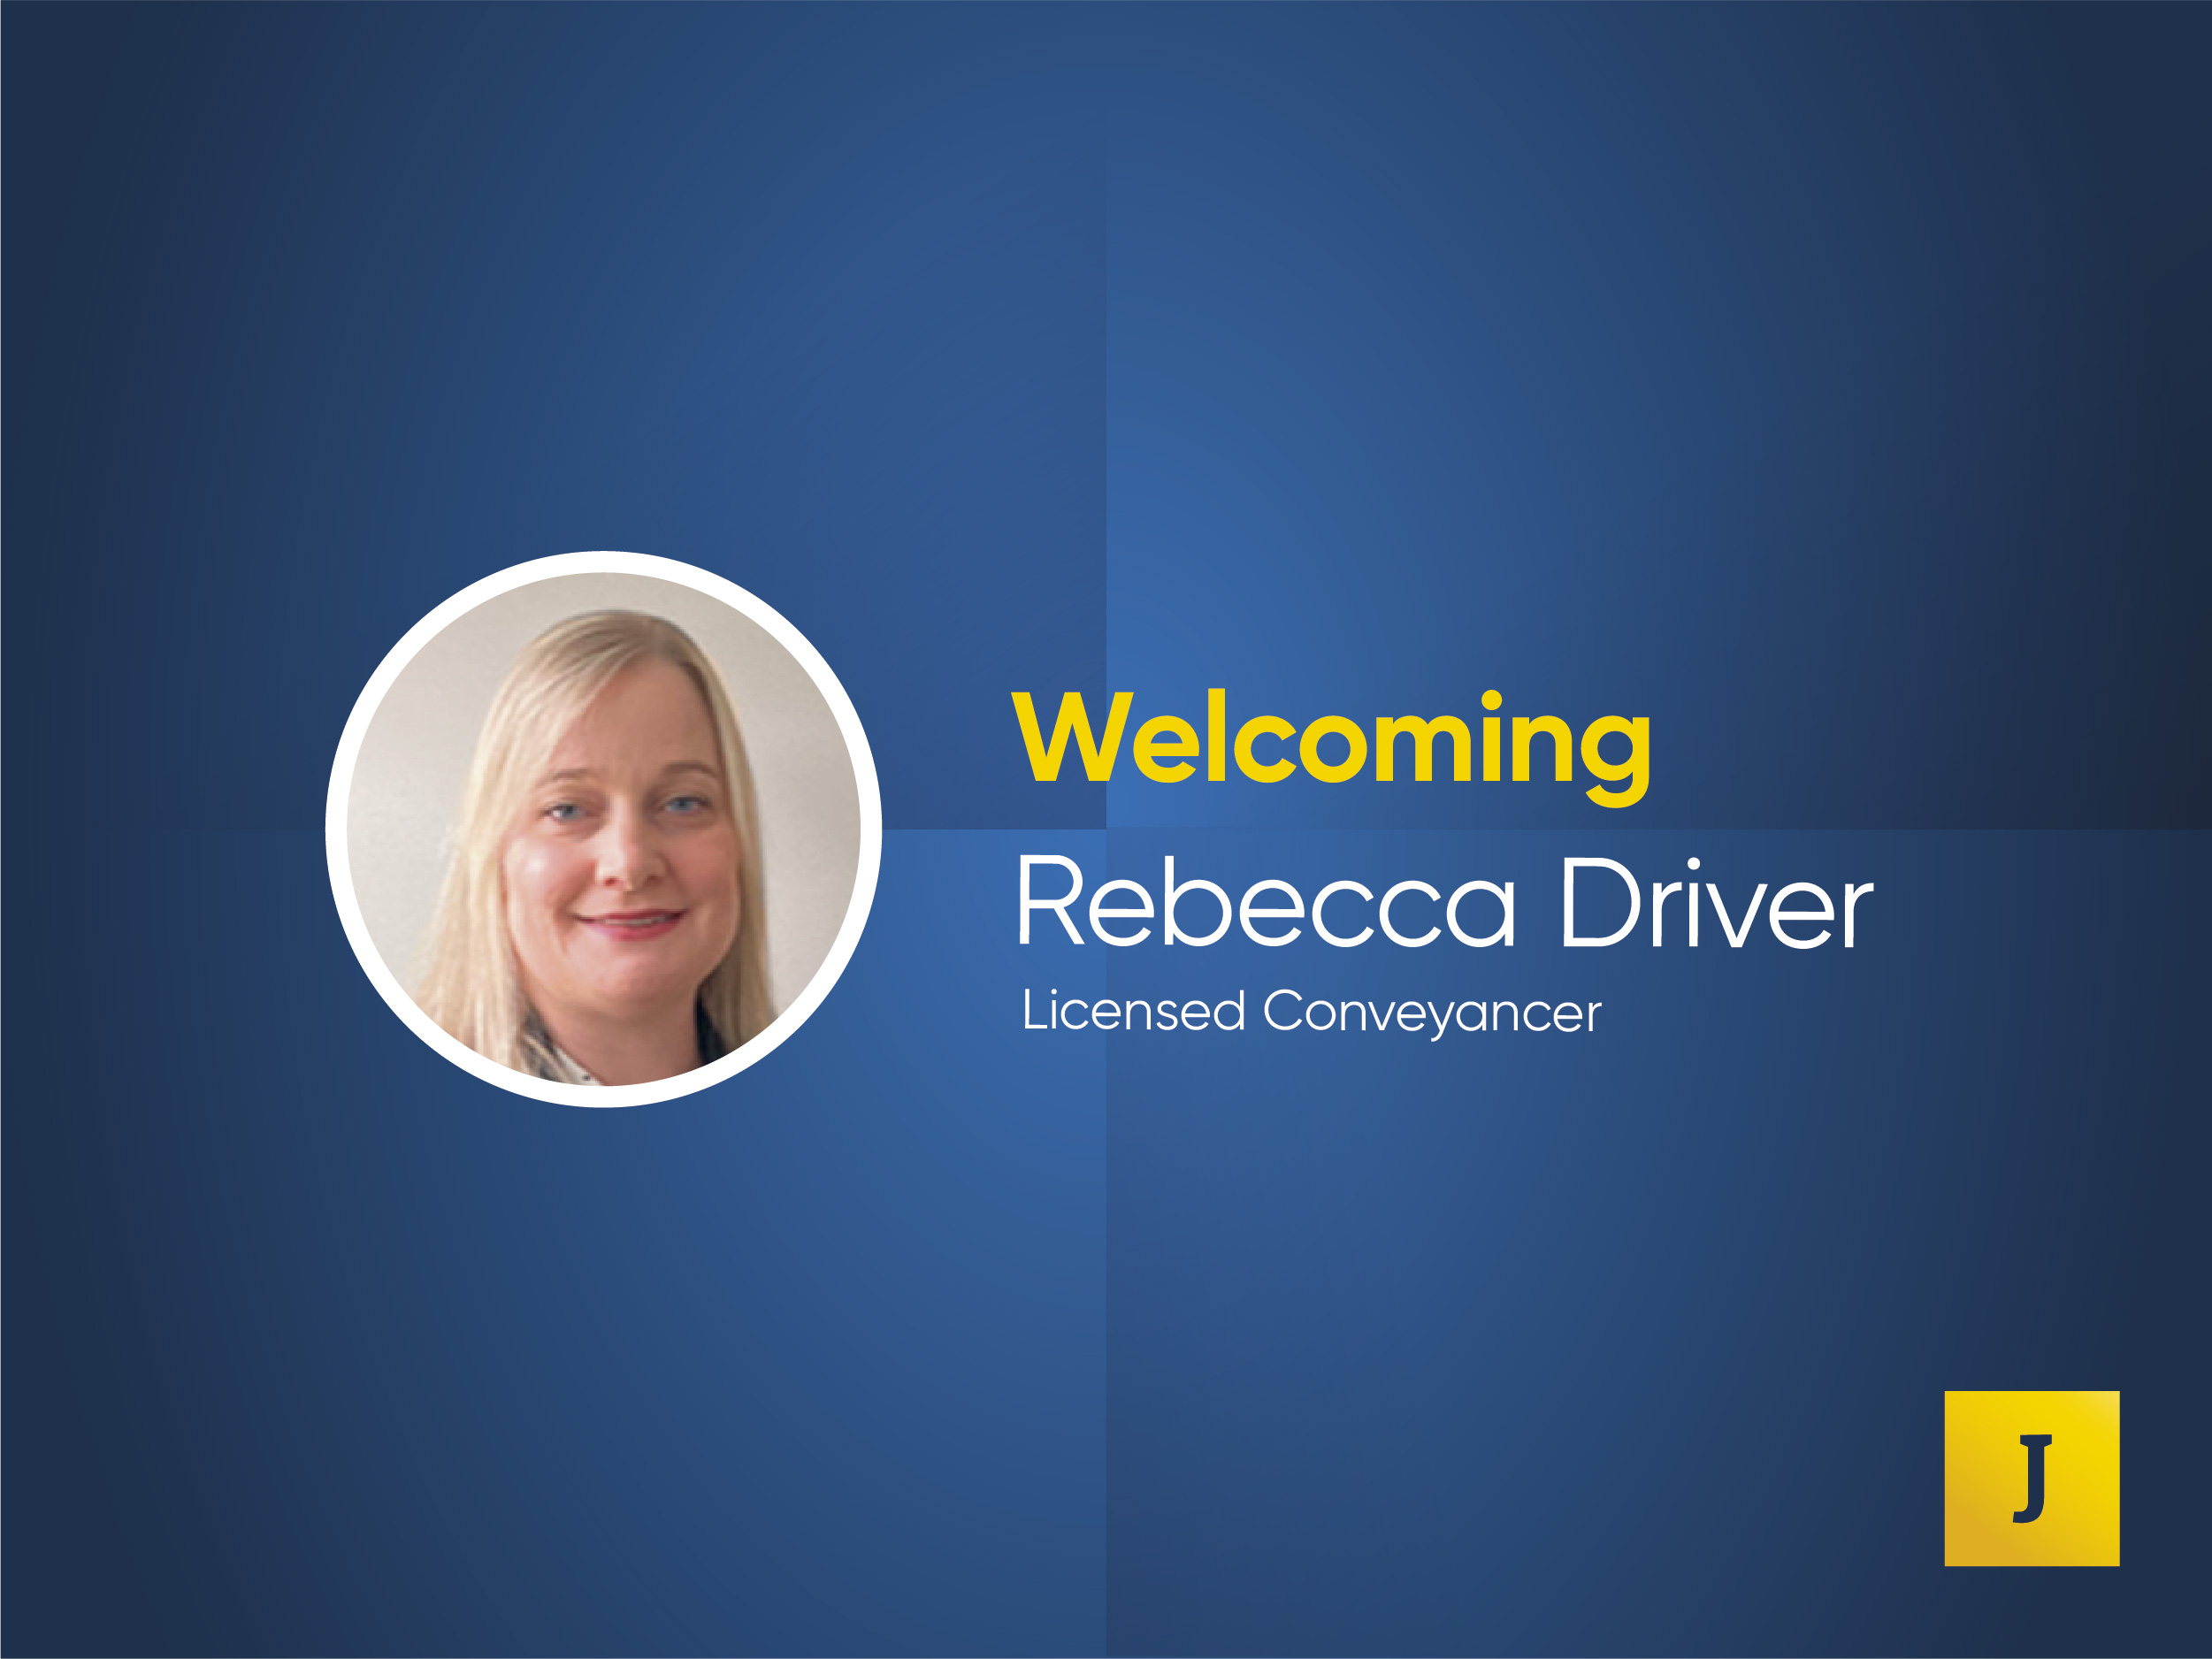 Rebecca Driver, Licensed Conveyancer